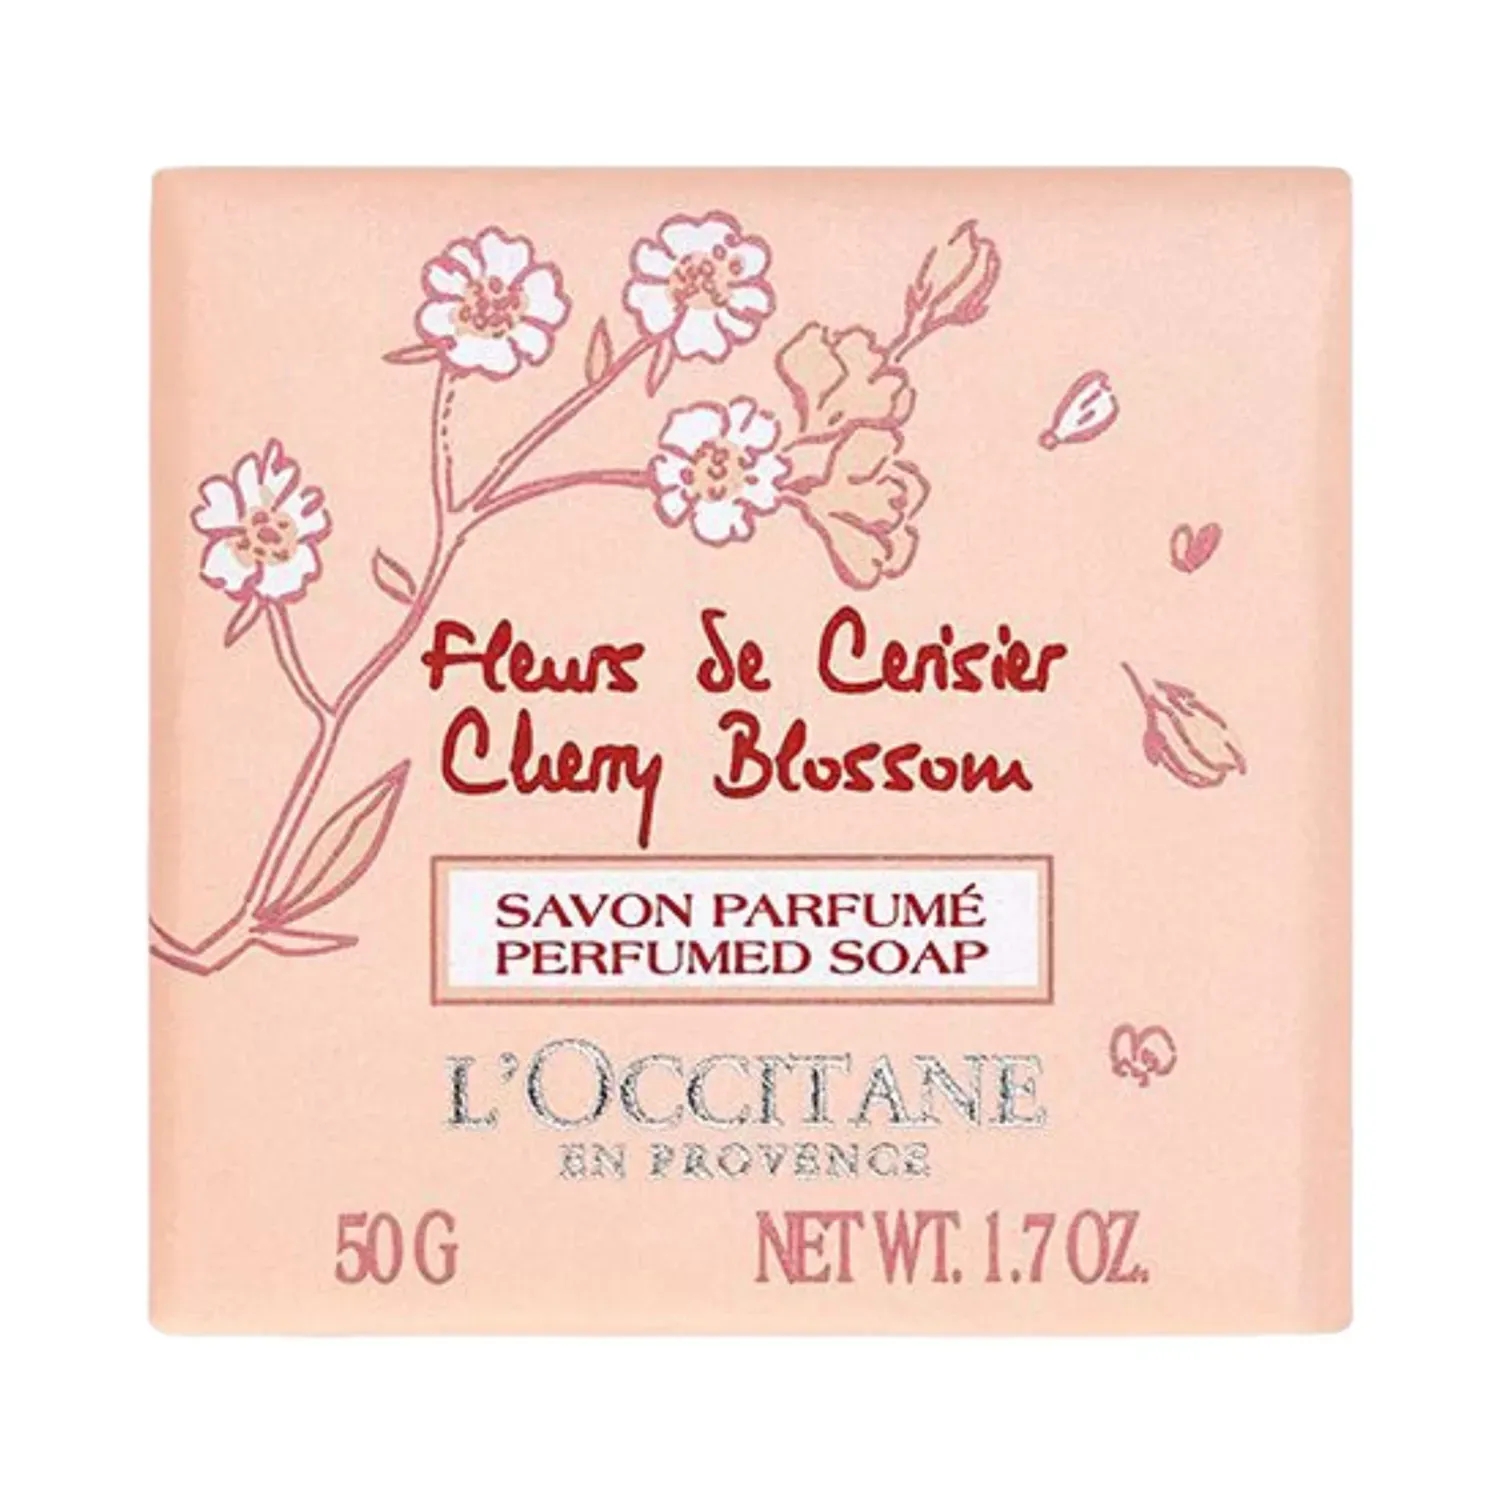 L'occitane | L'occitane Cherry Blossom Bath Soap - (50g)